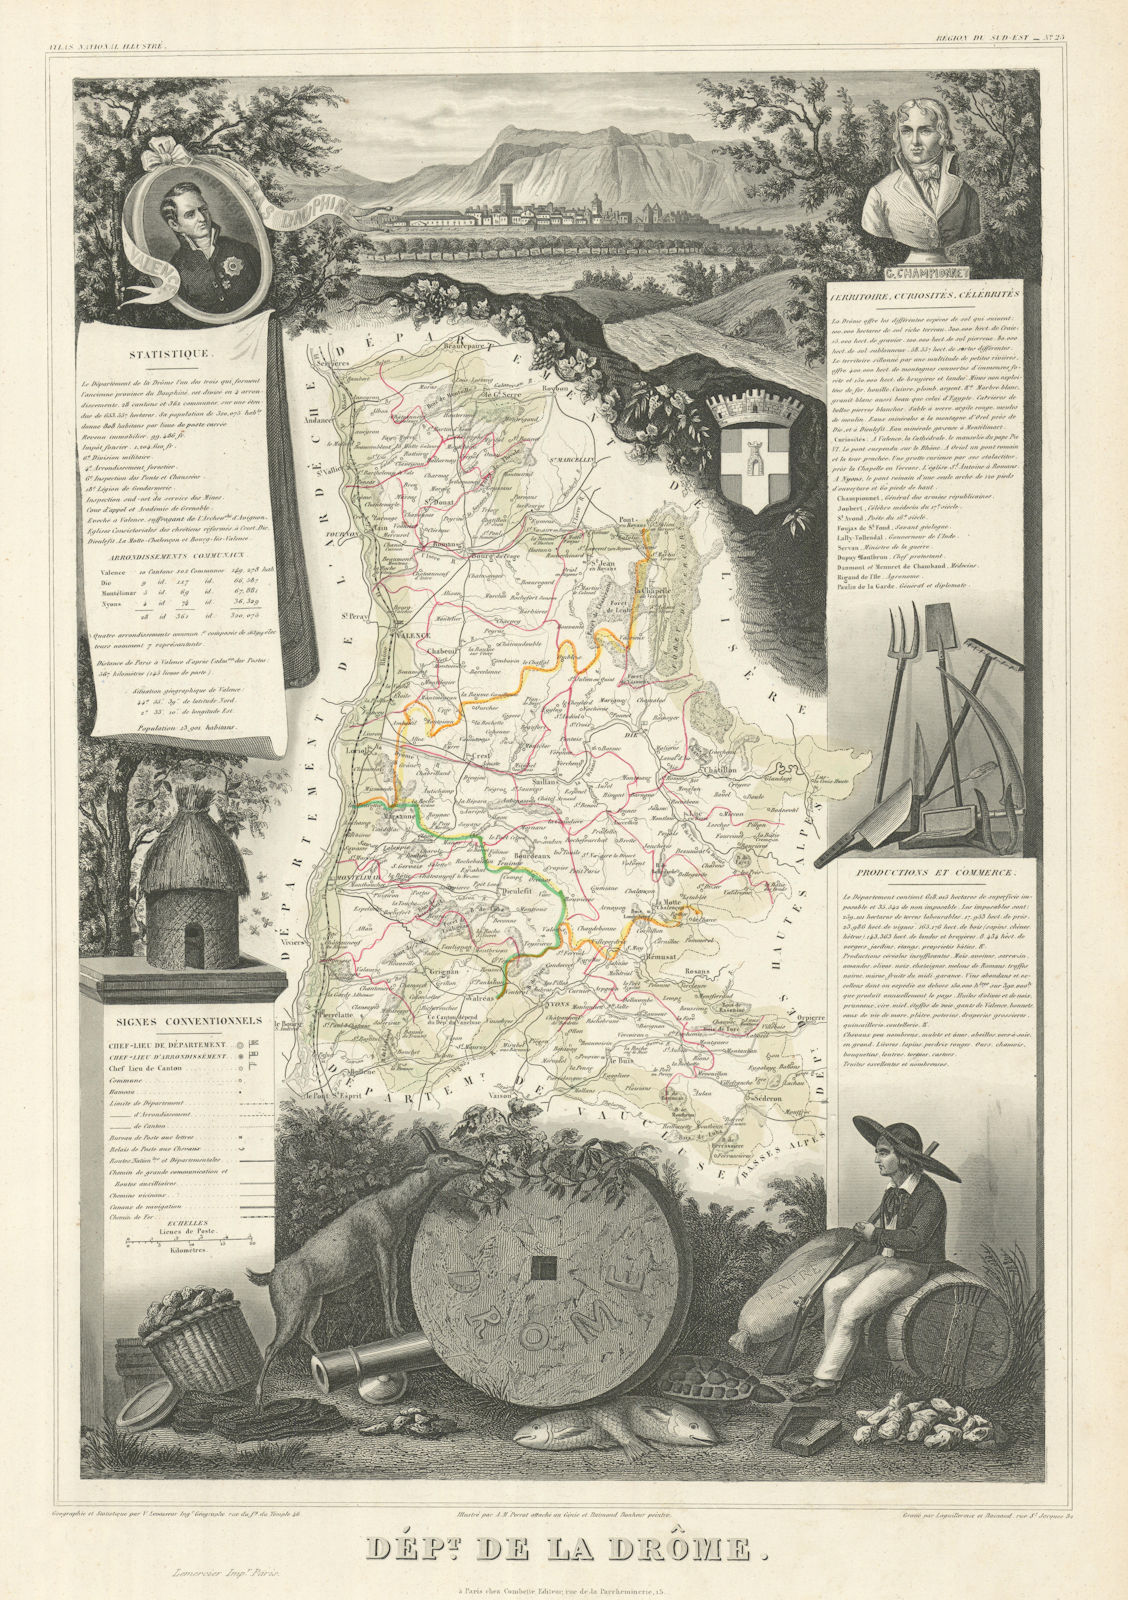 Département de la DRÔME. Decorative antique map/carte by Victor LEVASSEUR 1856